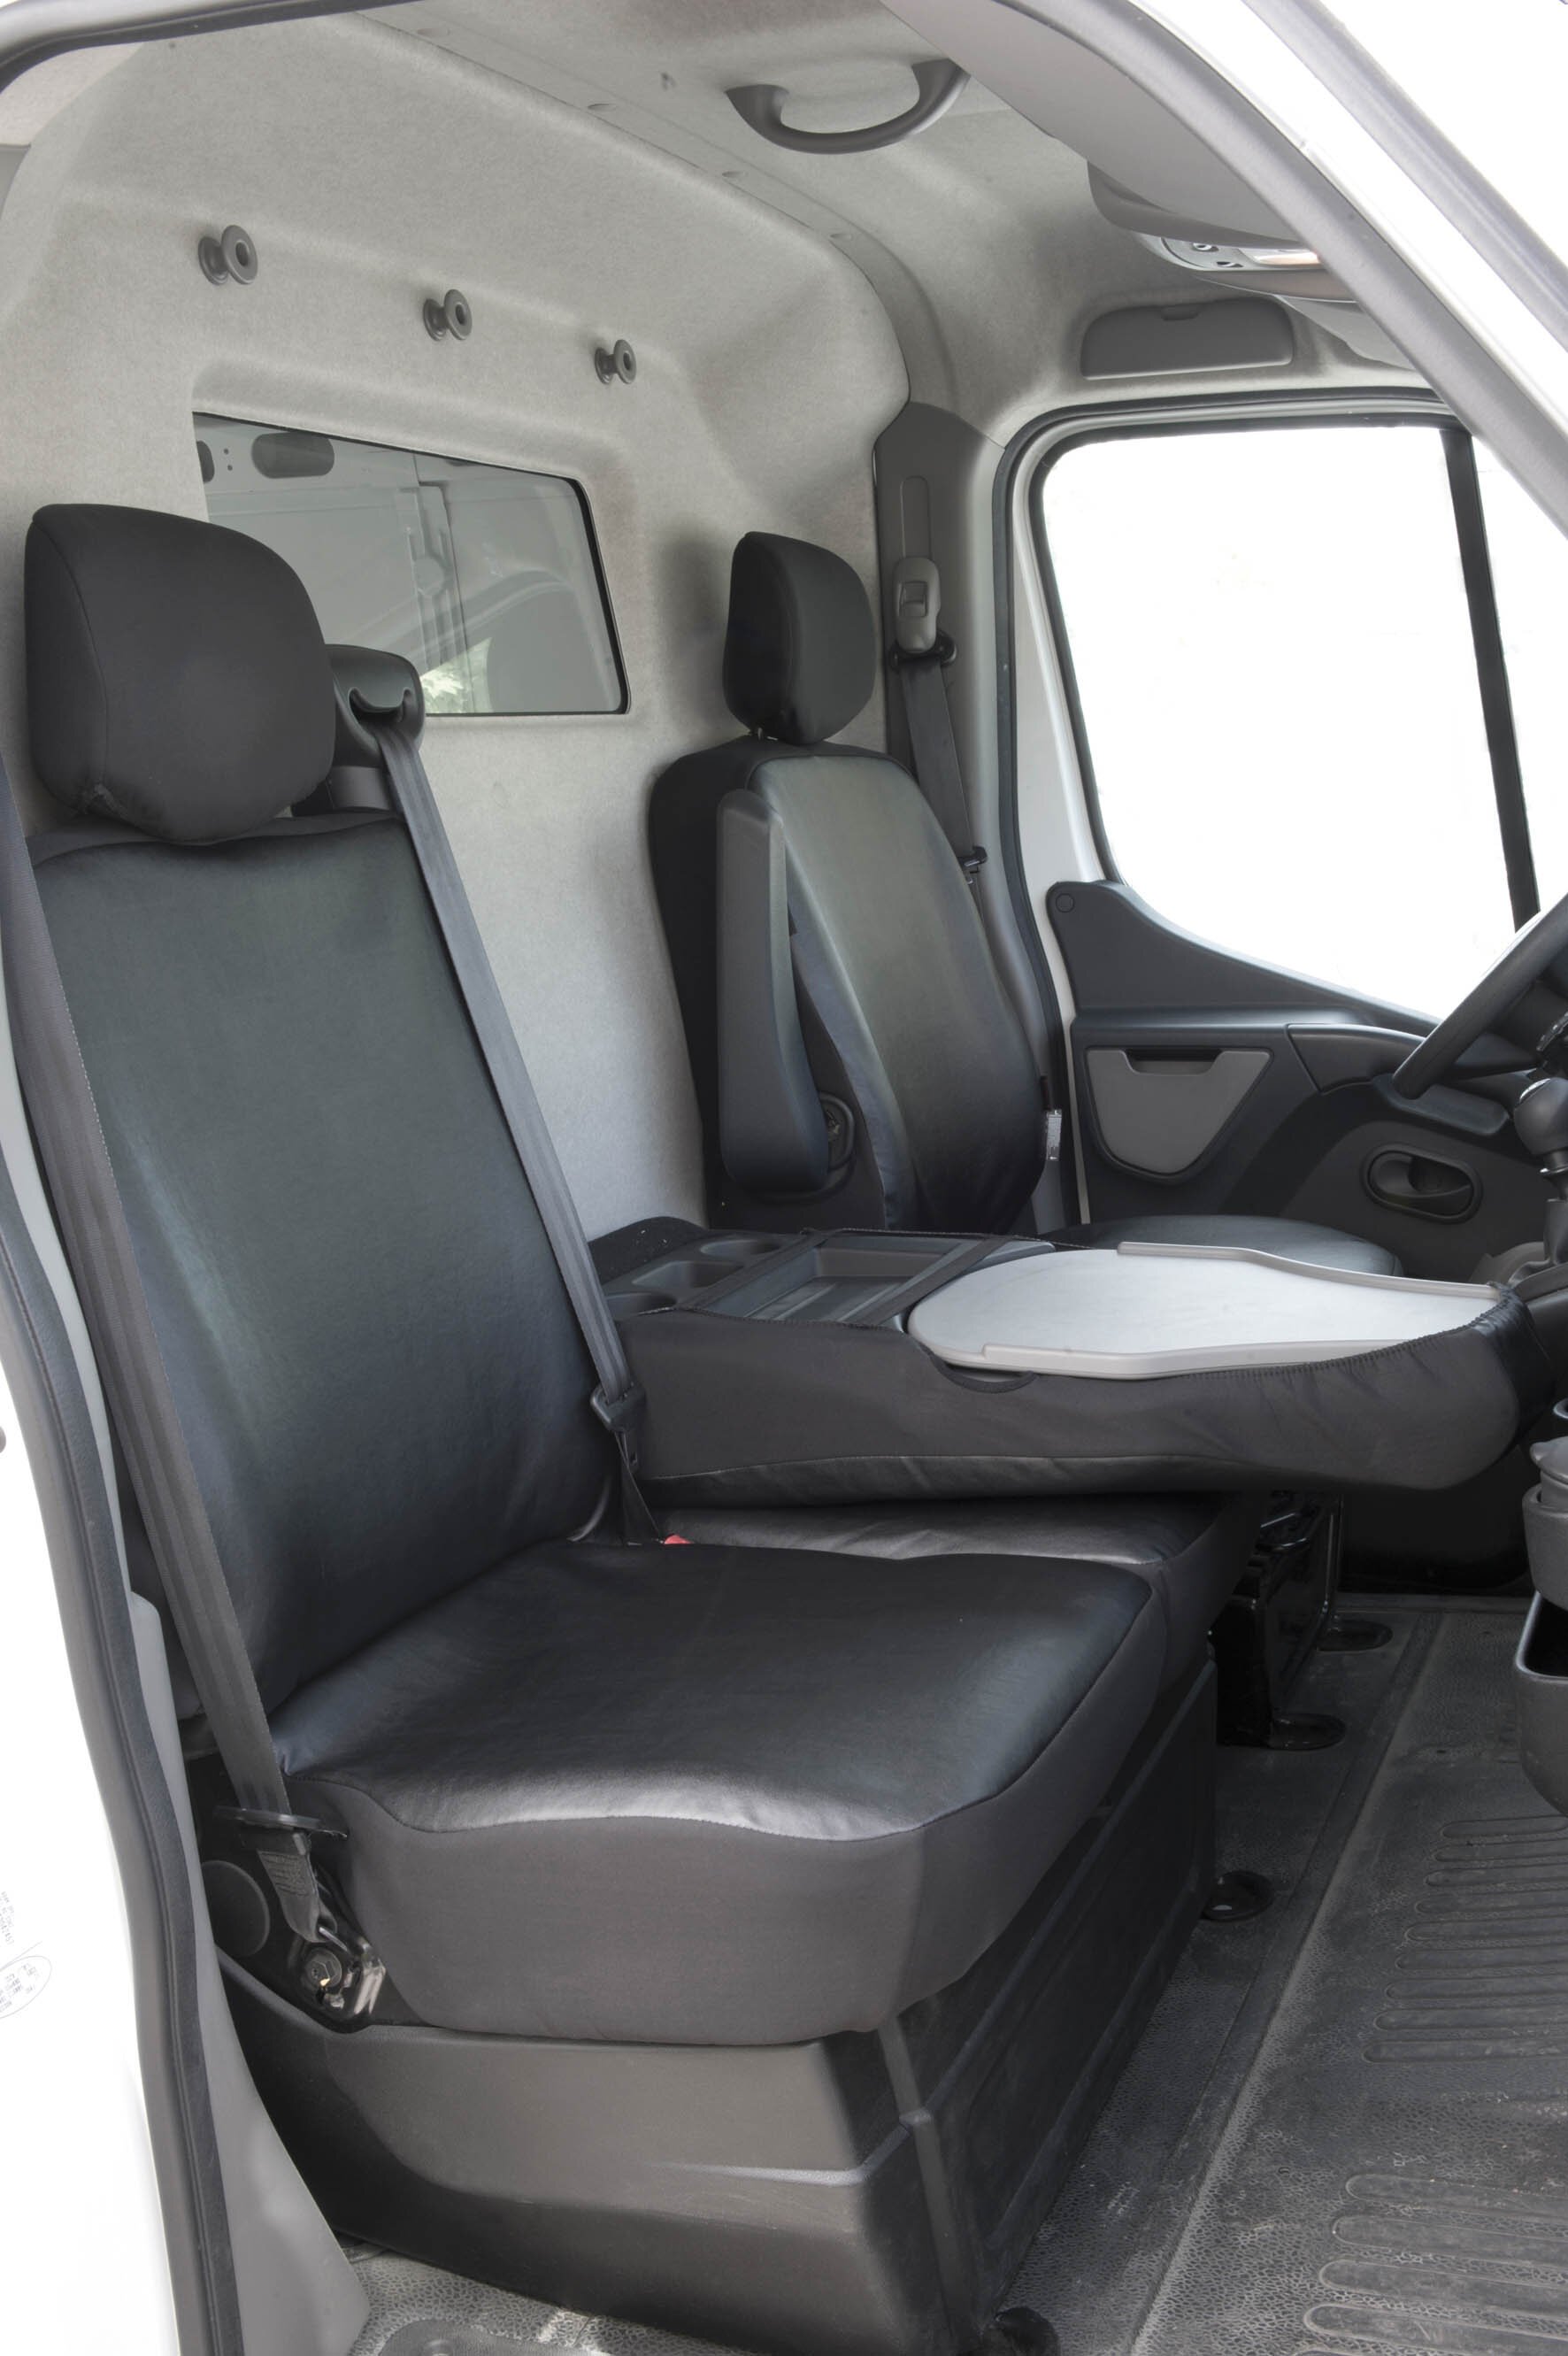 Transporter Coprisedili in similpelle per Opel Movano, Renault Master, Nissan Interstar, sedile singolo e doppio